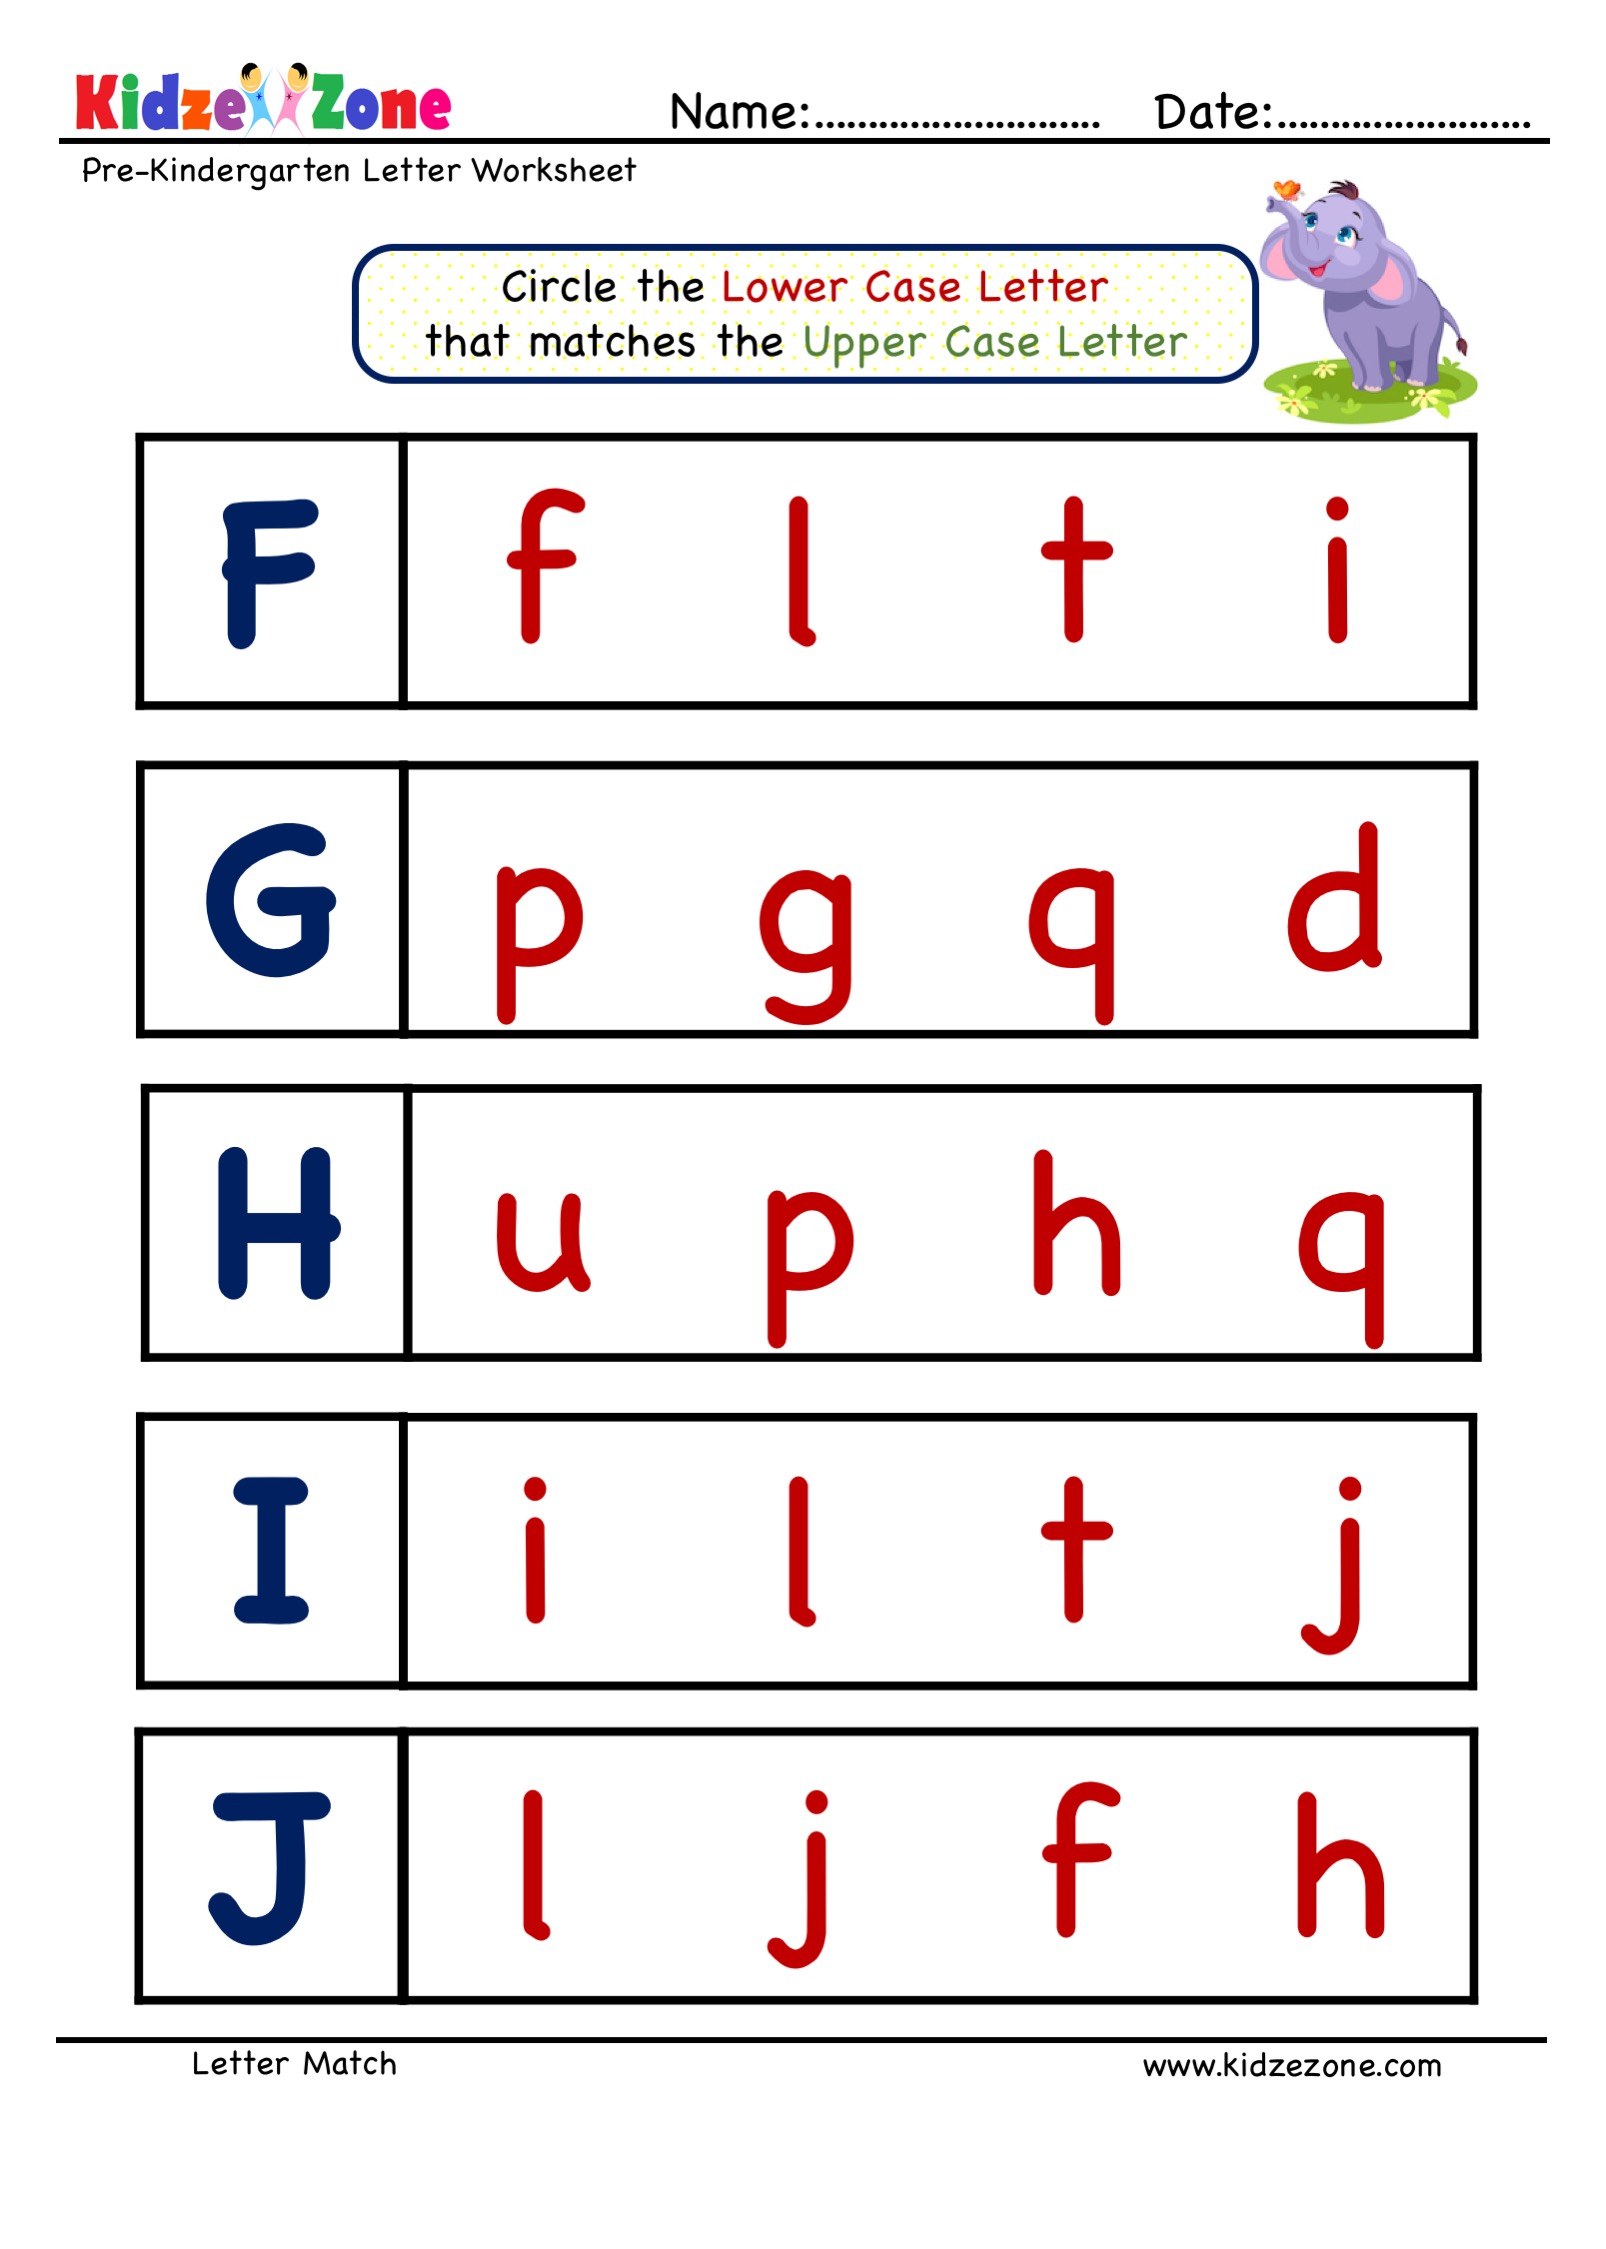 tracing-letter-g-worksheets-for-kindergarten-letter-worksheets-learning